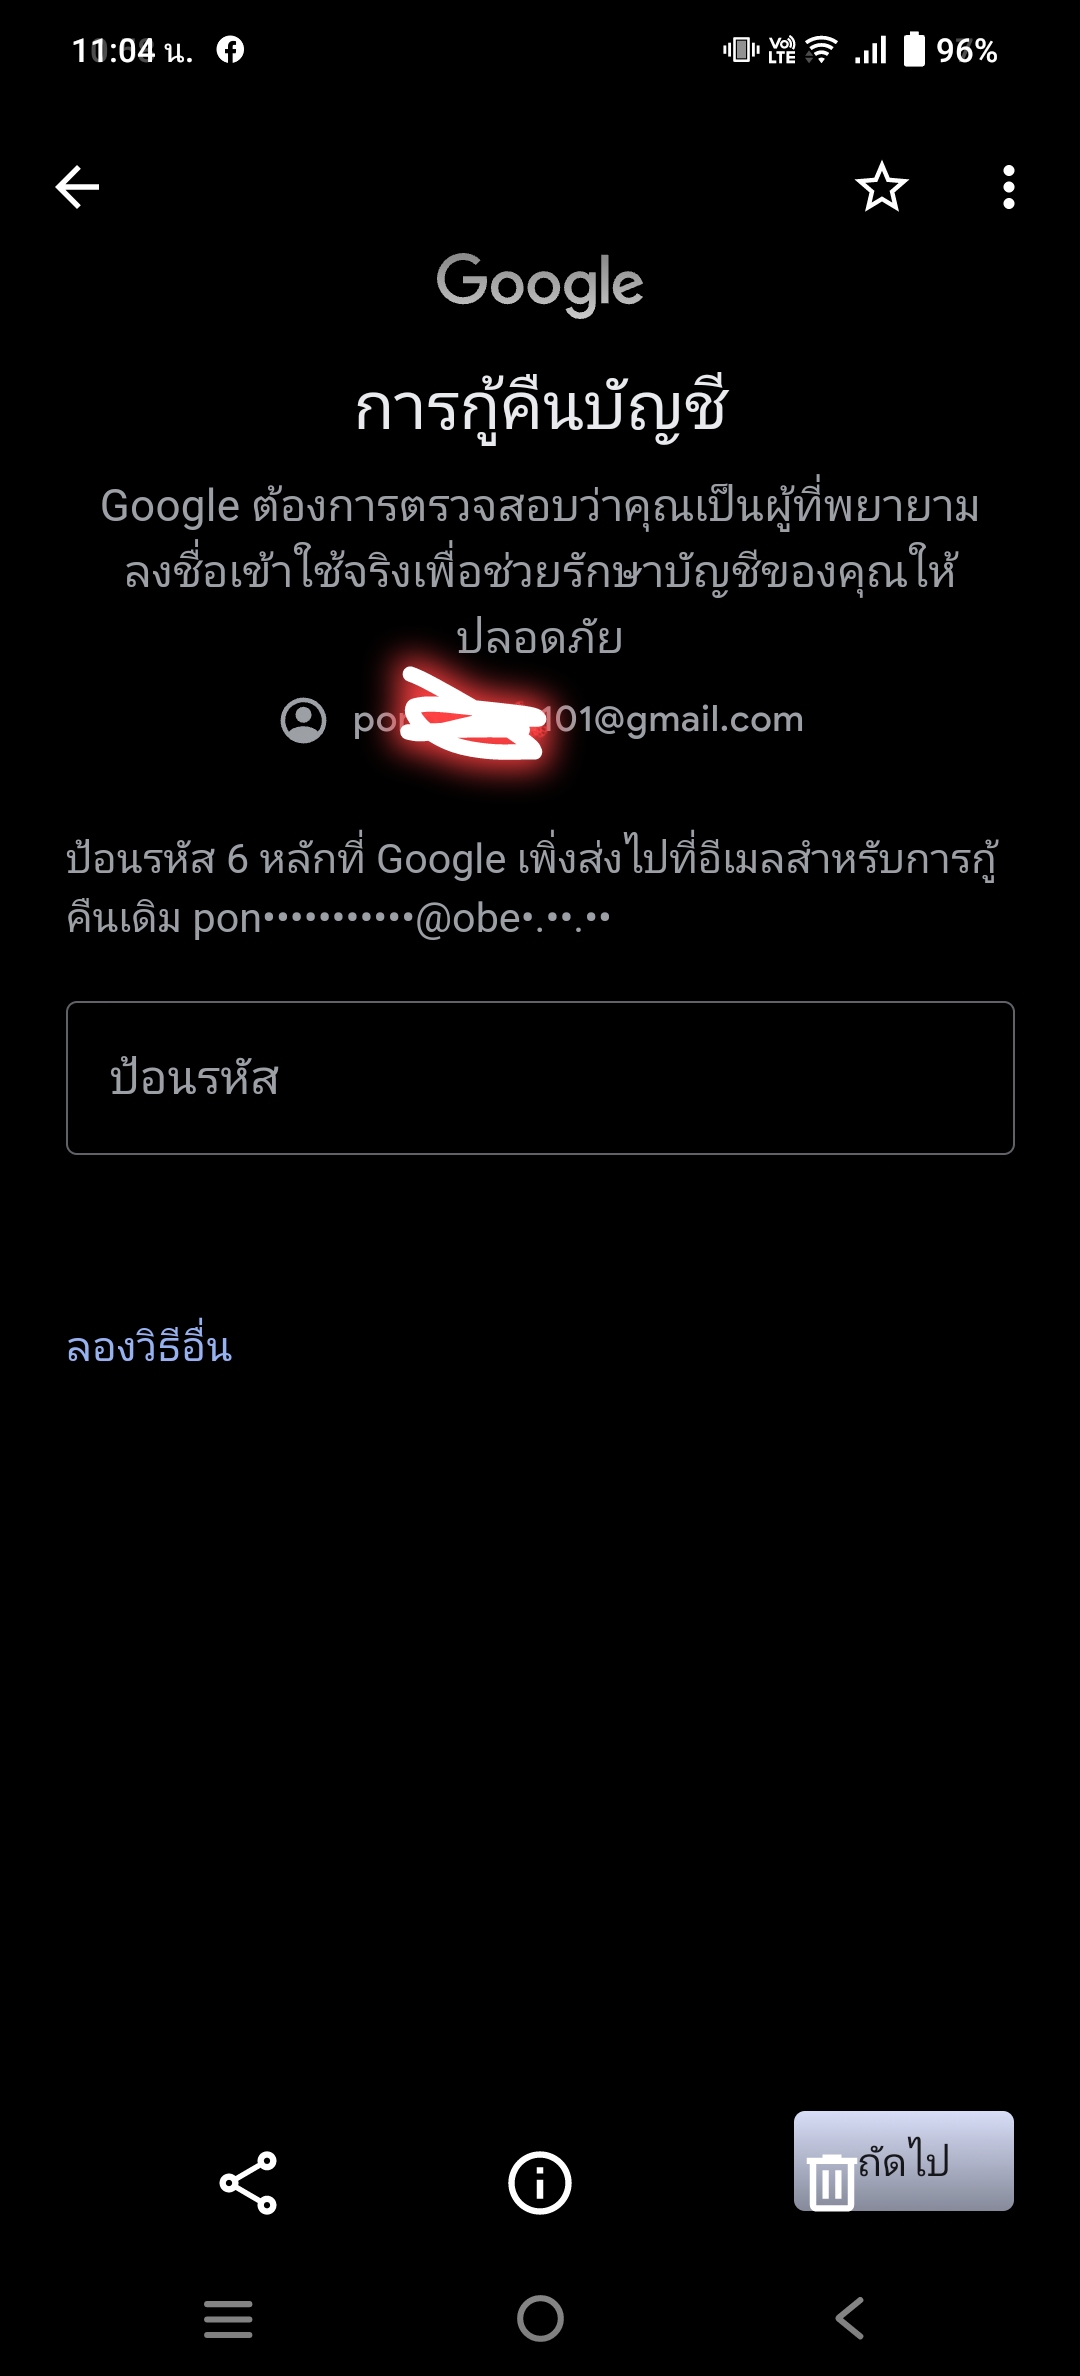 รหัส 6 หลักกู้ Gmail ไม่เข้าเมลล์สำรอง - Pantip